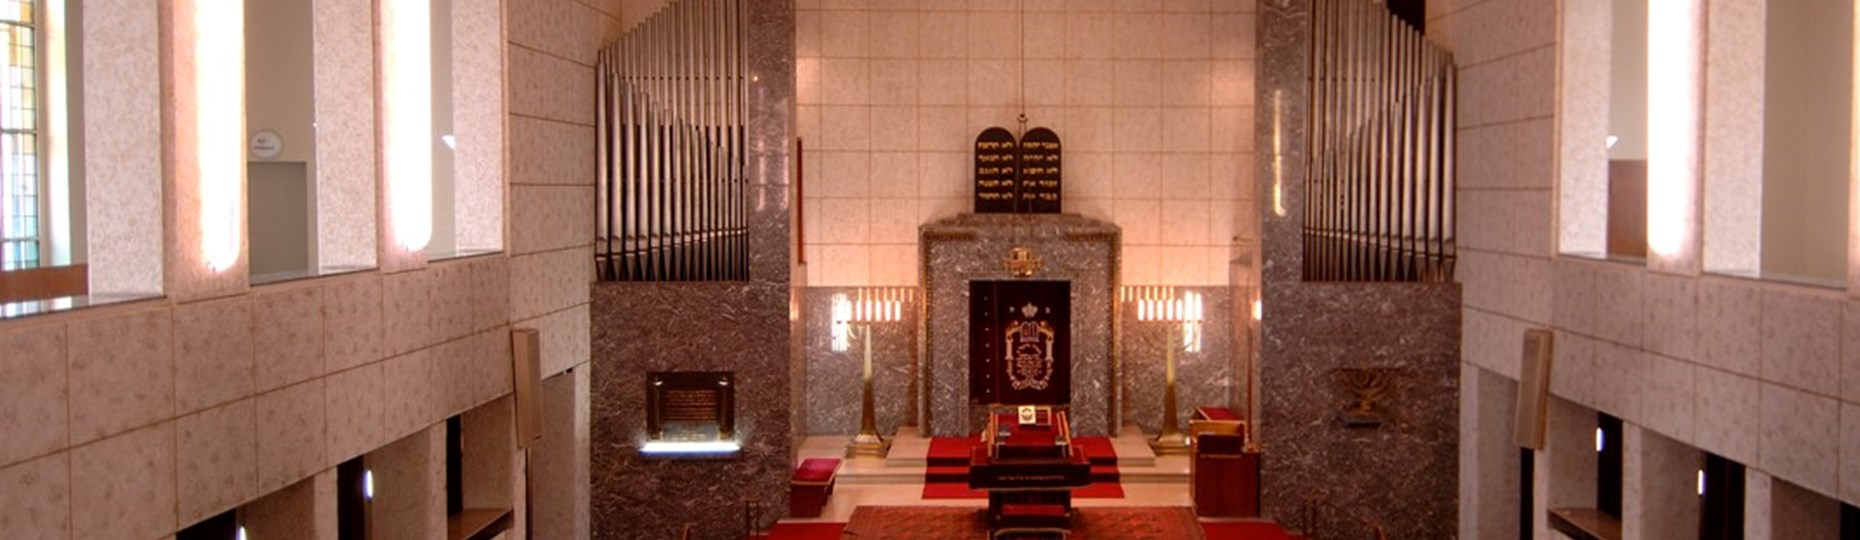 SynagogeInnen